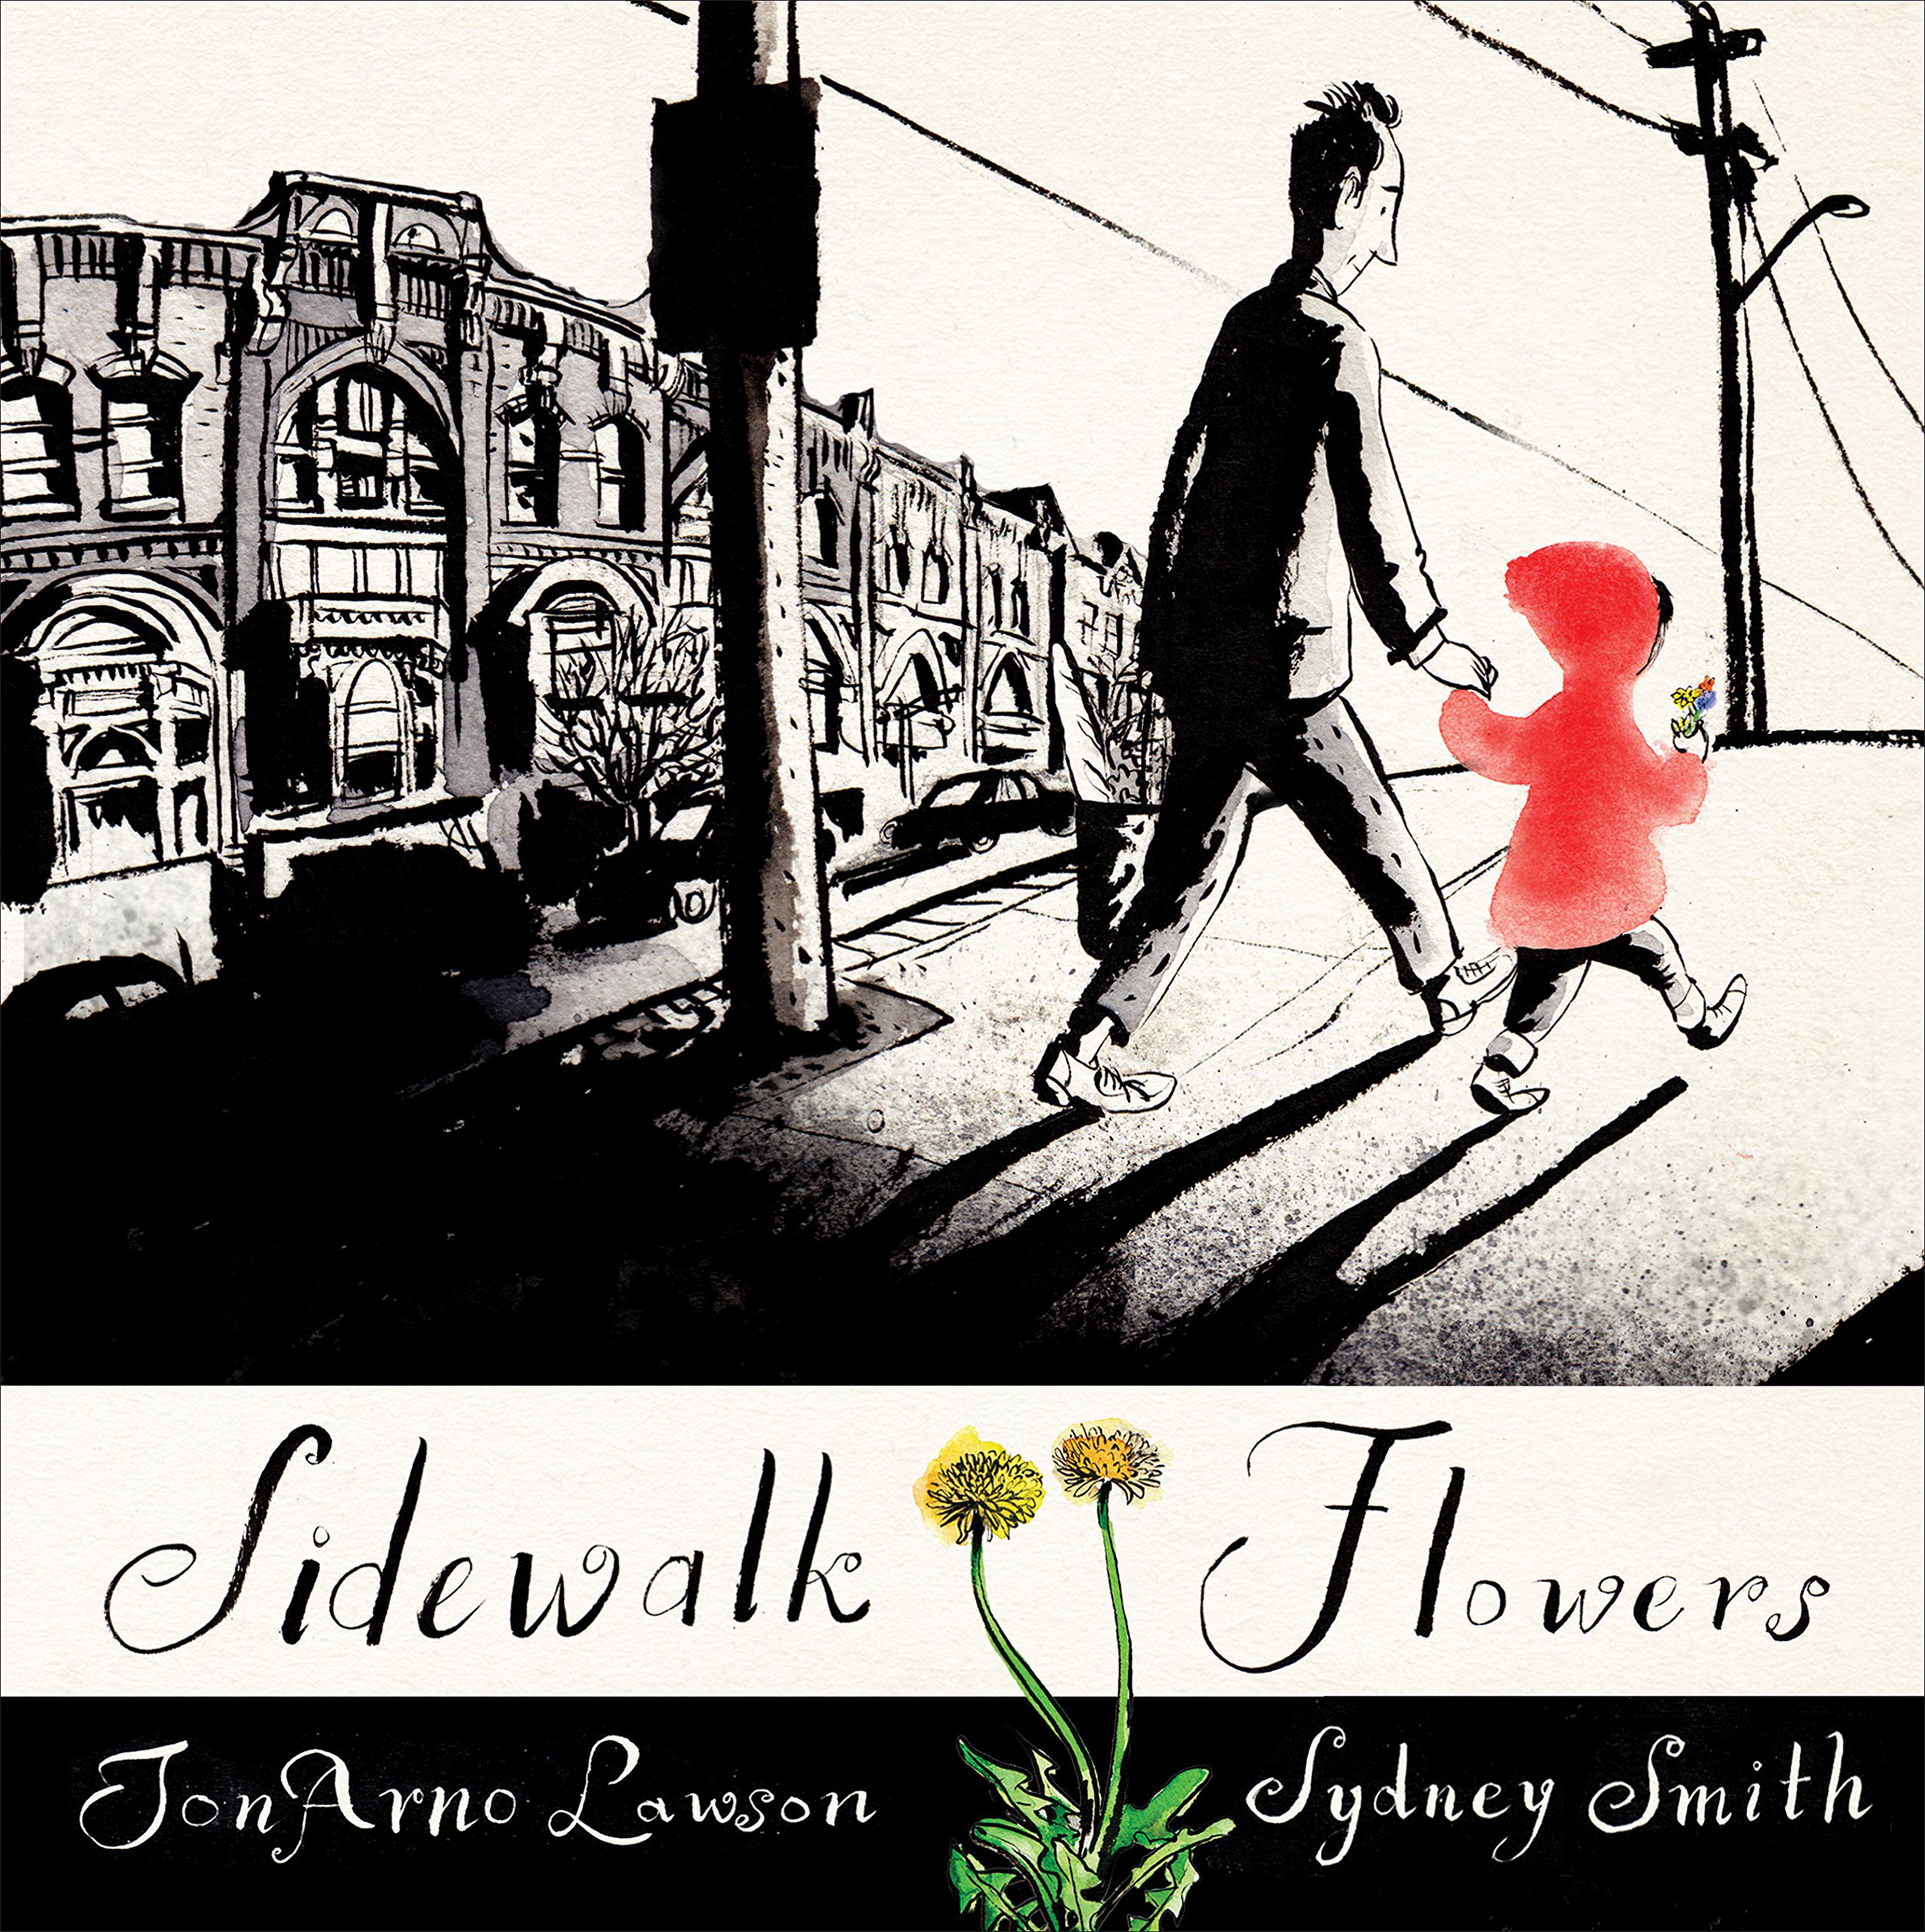 JonArno Lawson & Sidney Smith, Sidewalk Flowers (2015)